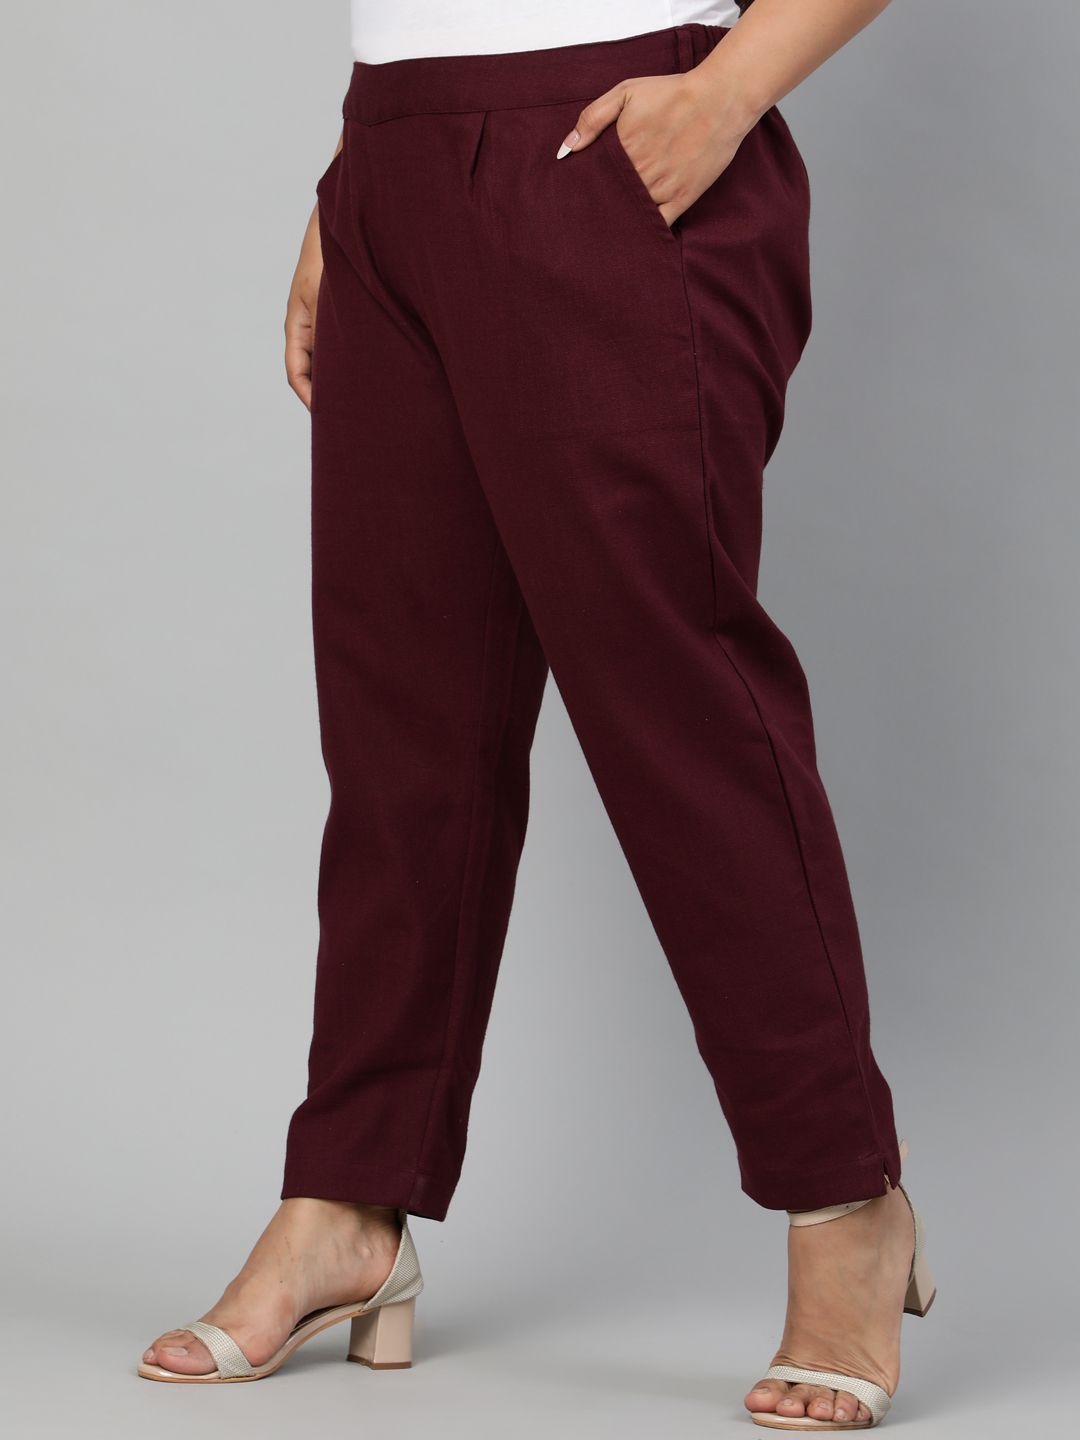 Shop cotton casual pants for ladies